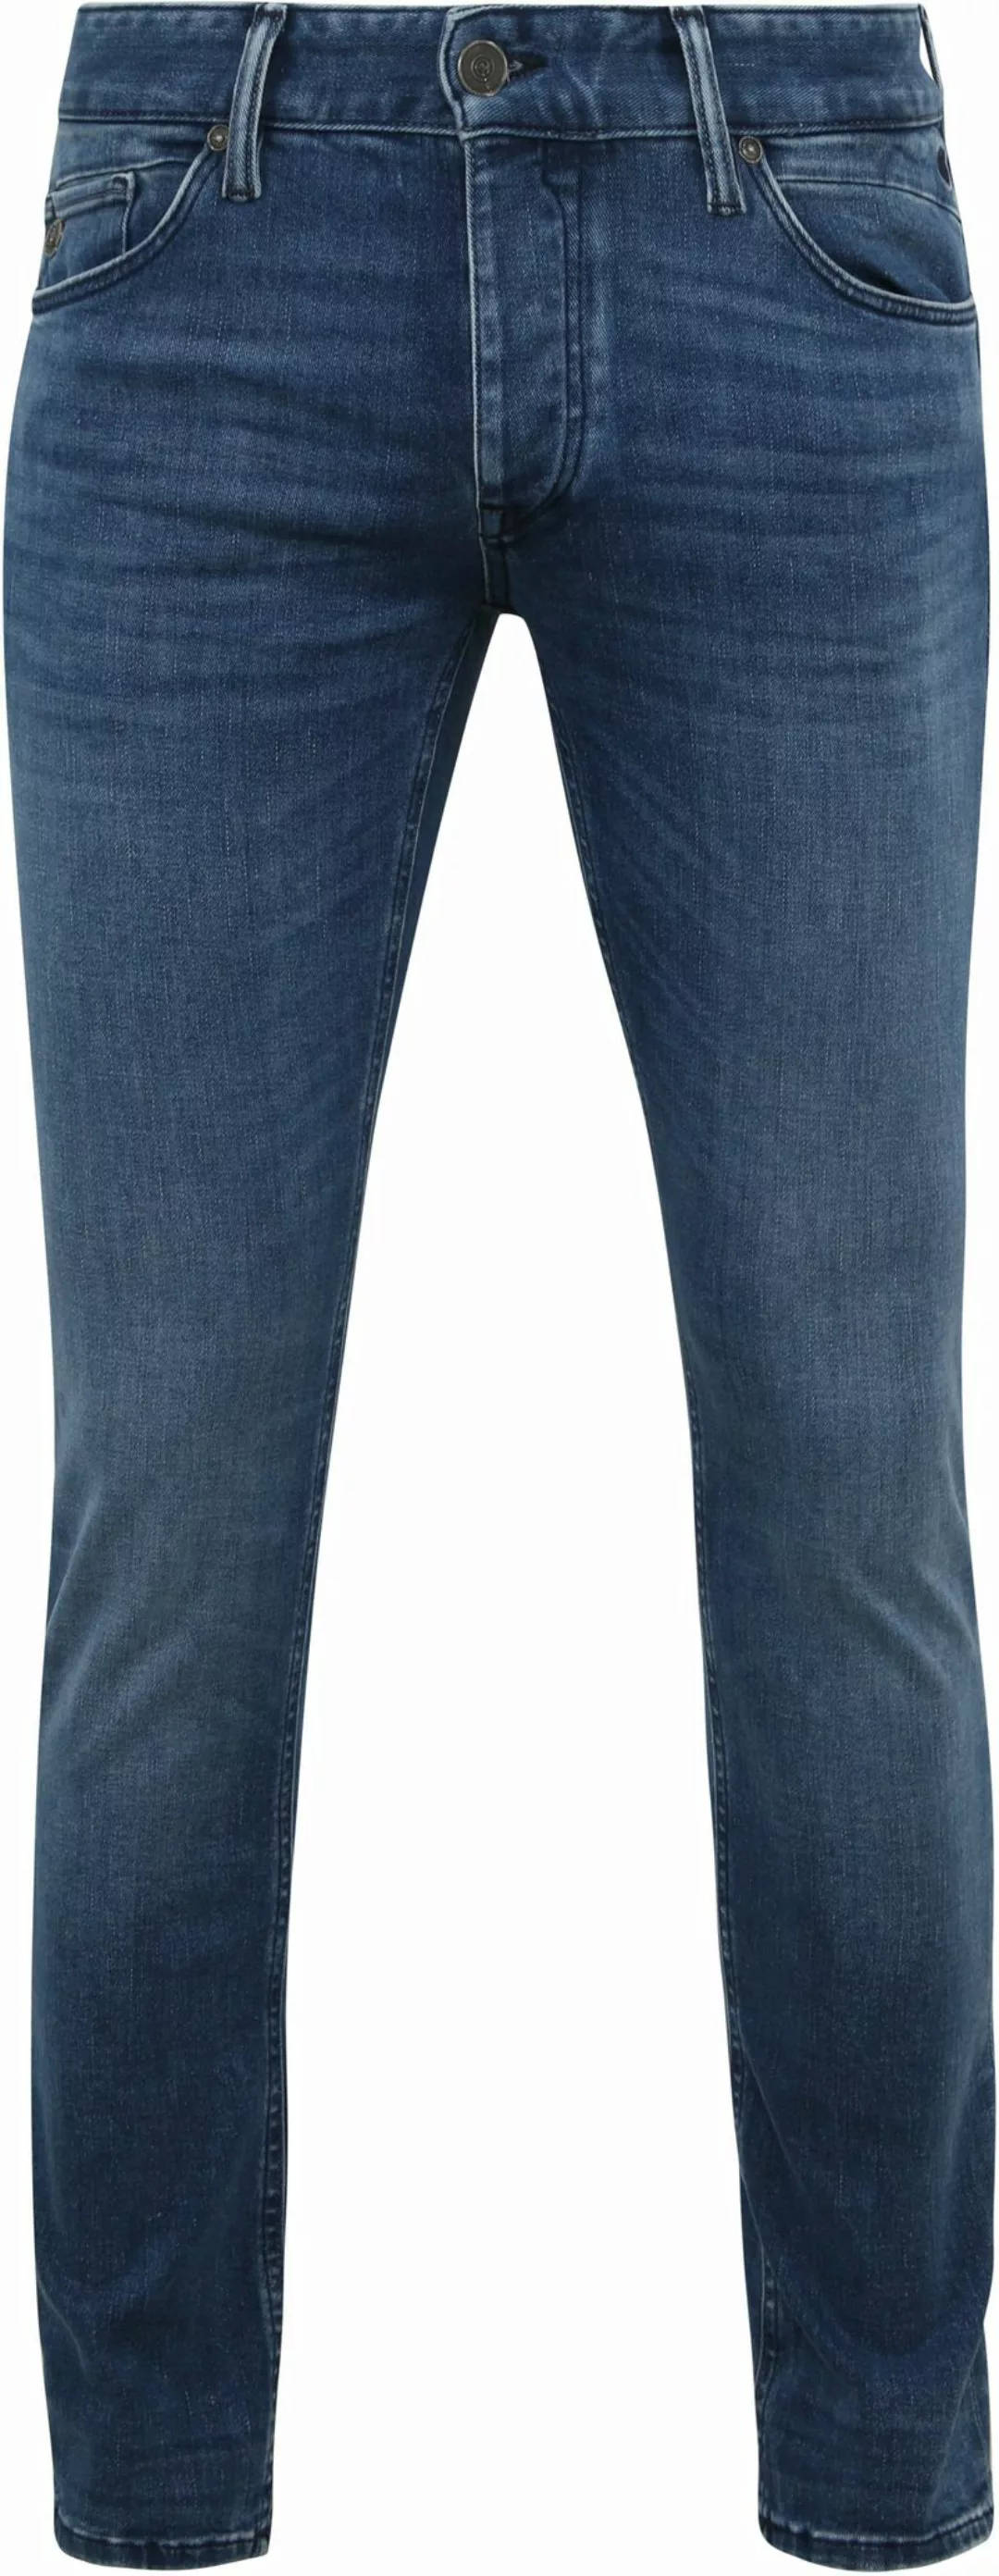 Cast Iron Riser Jeans Blau IIW - Größe W 34 - L 32 günstig online kaufen